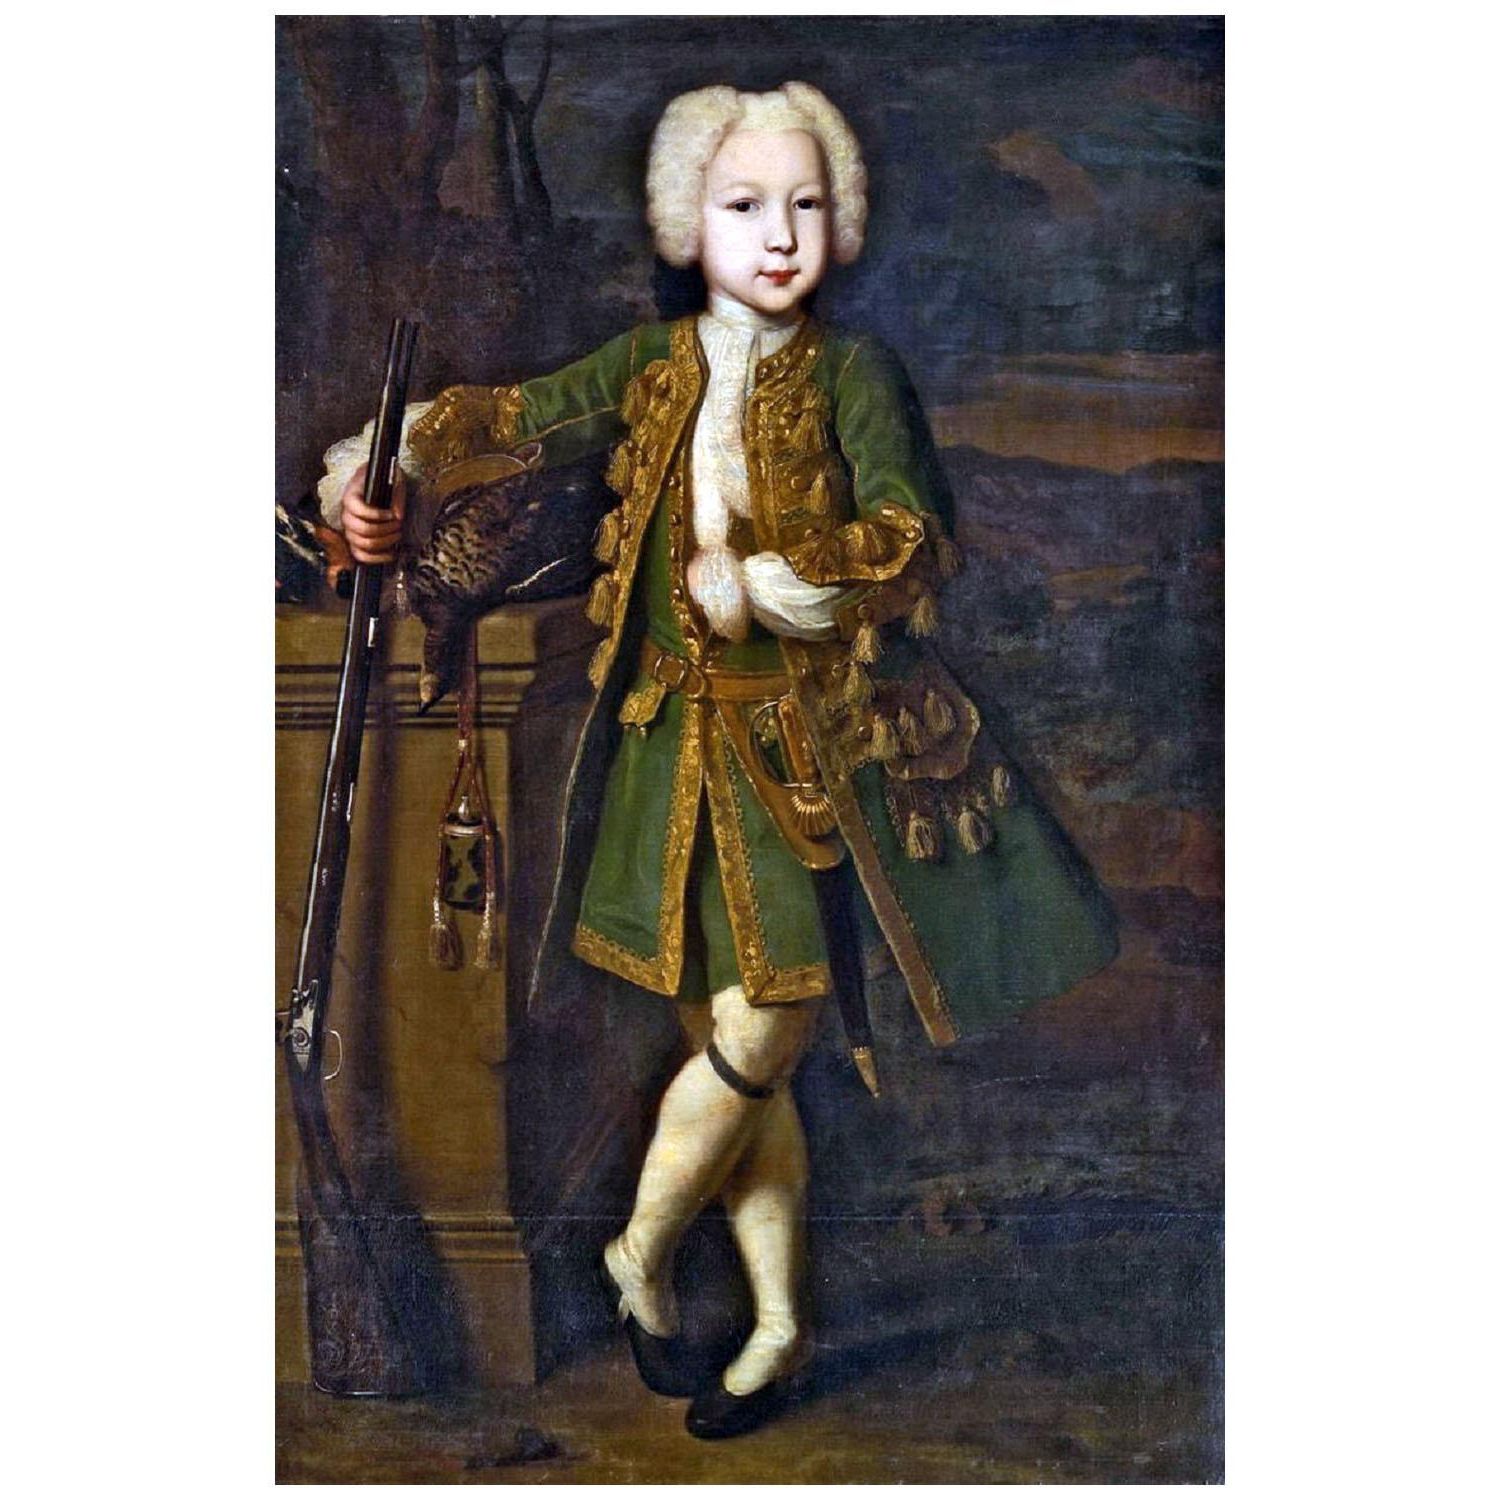 Луи Каравак. Портрет мальчика в охотничьем костюме. 1730. Русский музей